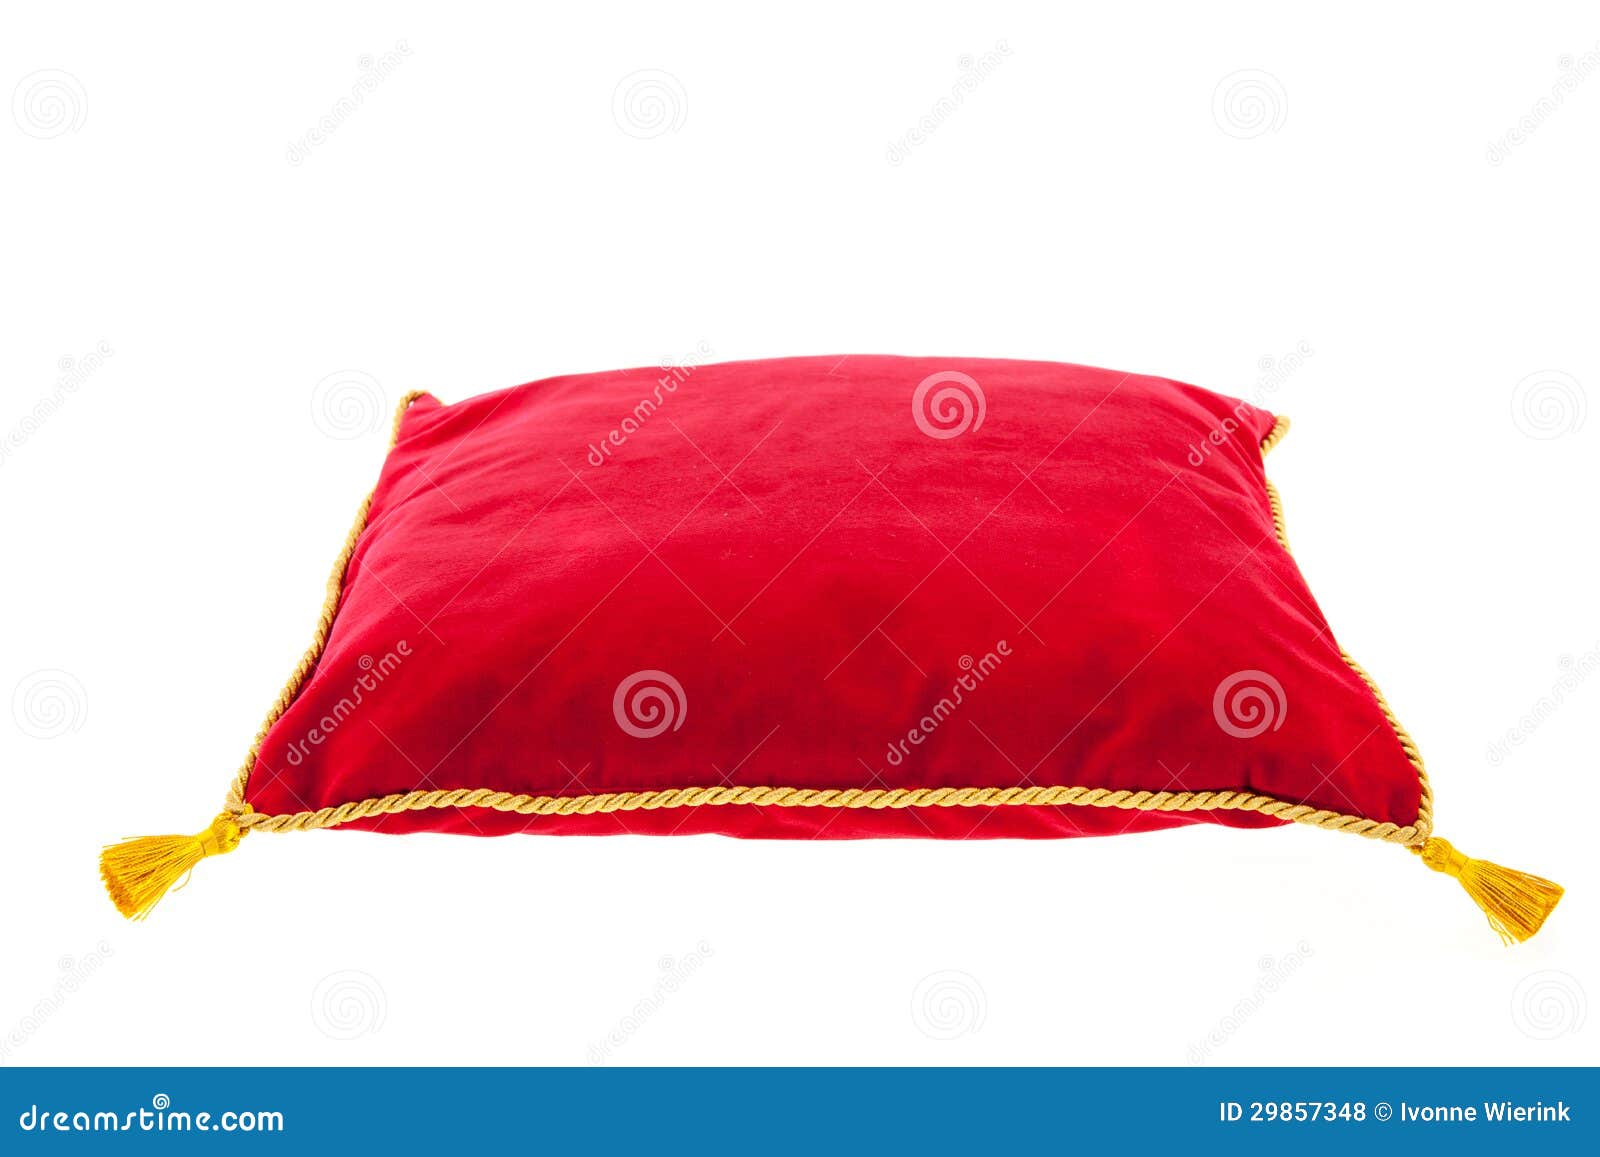 royal red velvet pillow